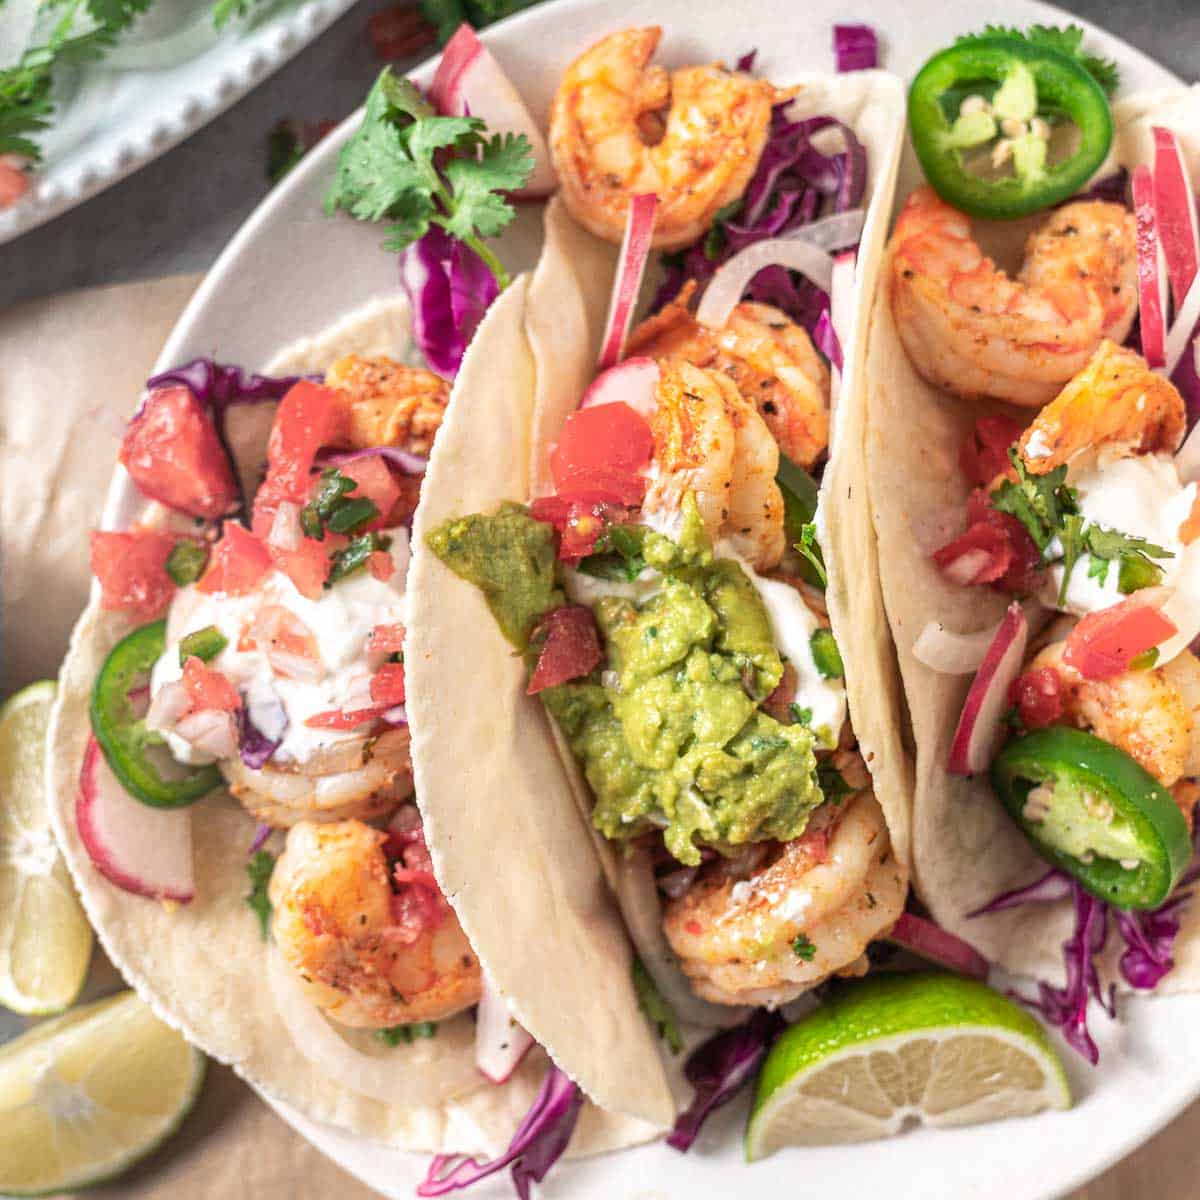 Healthy shrimp tacos with Siete tortillas.